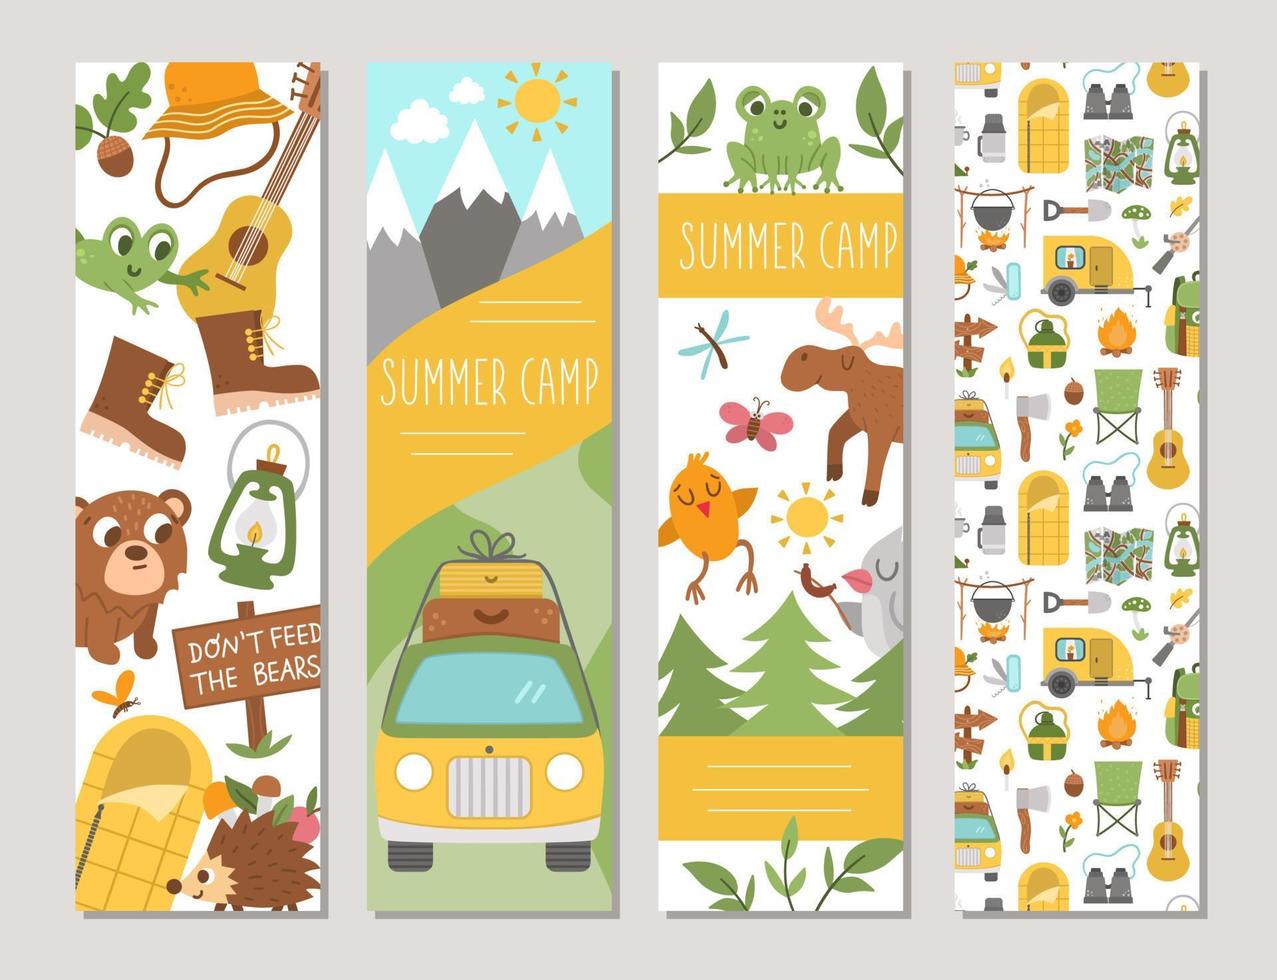 söt uppsättning vertikala kort för sommarläger med skogsdjur, campingelement och skåpbil. vektor skog resa utskriftsmallar. aktiva helgdagar eller bokmärken för lokal turism eller bannerdesign